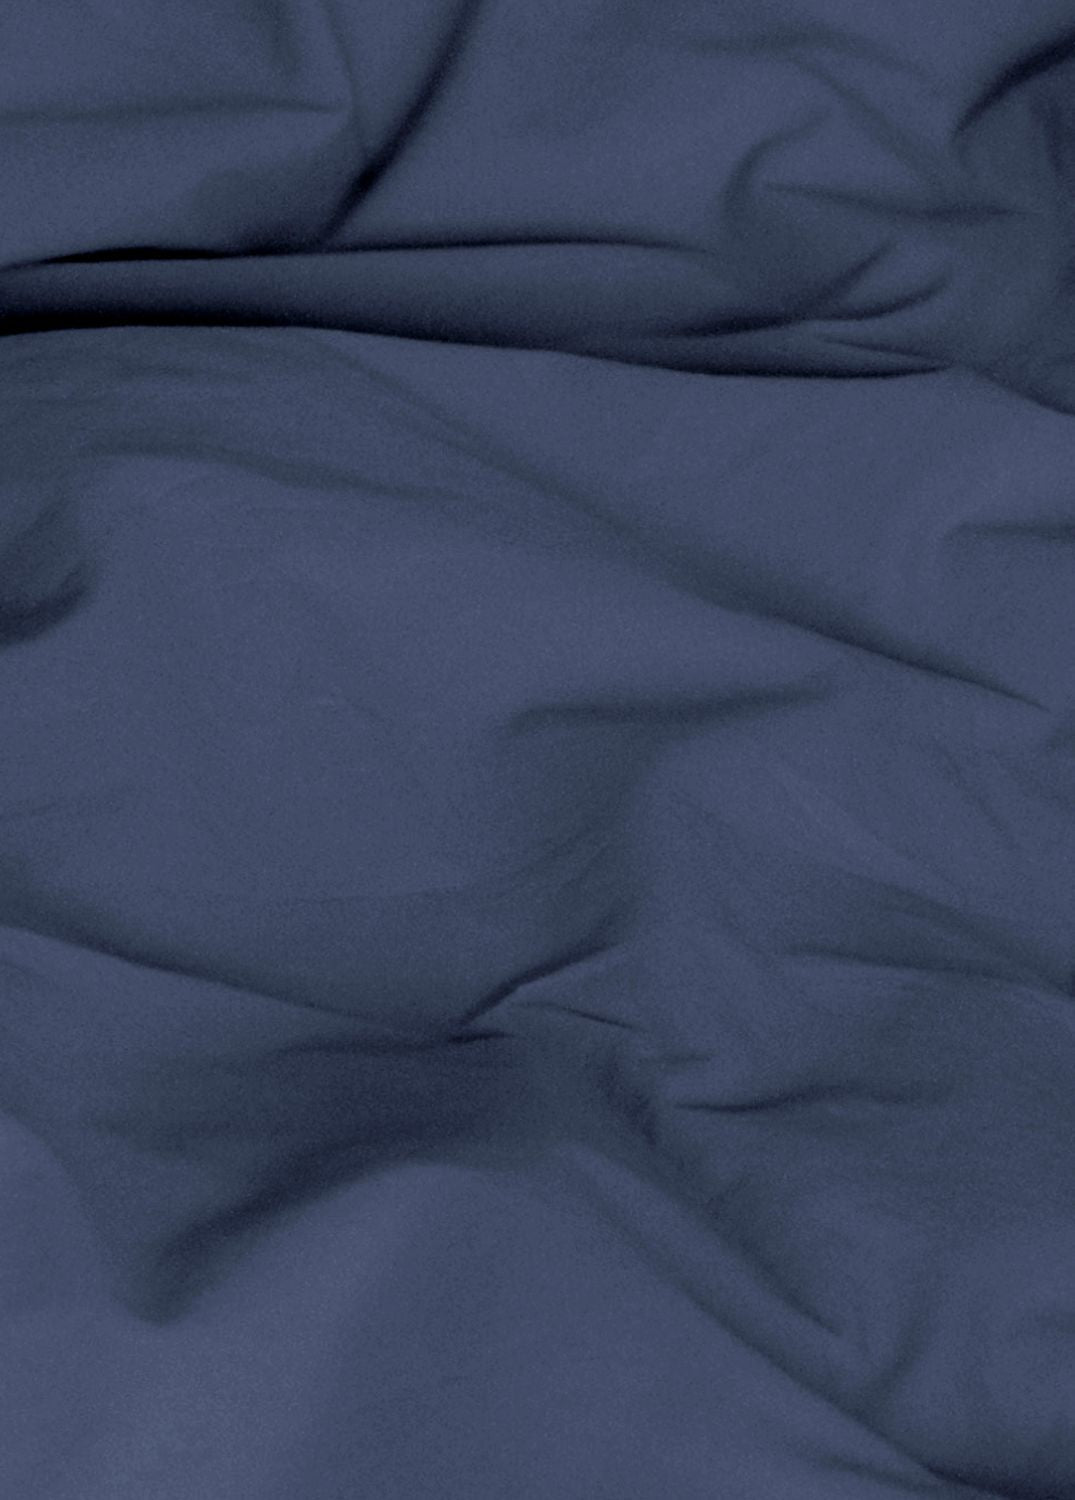 Sekan studio bomull percale sengesett - marine blå